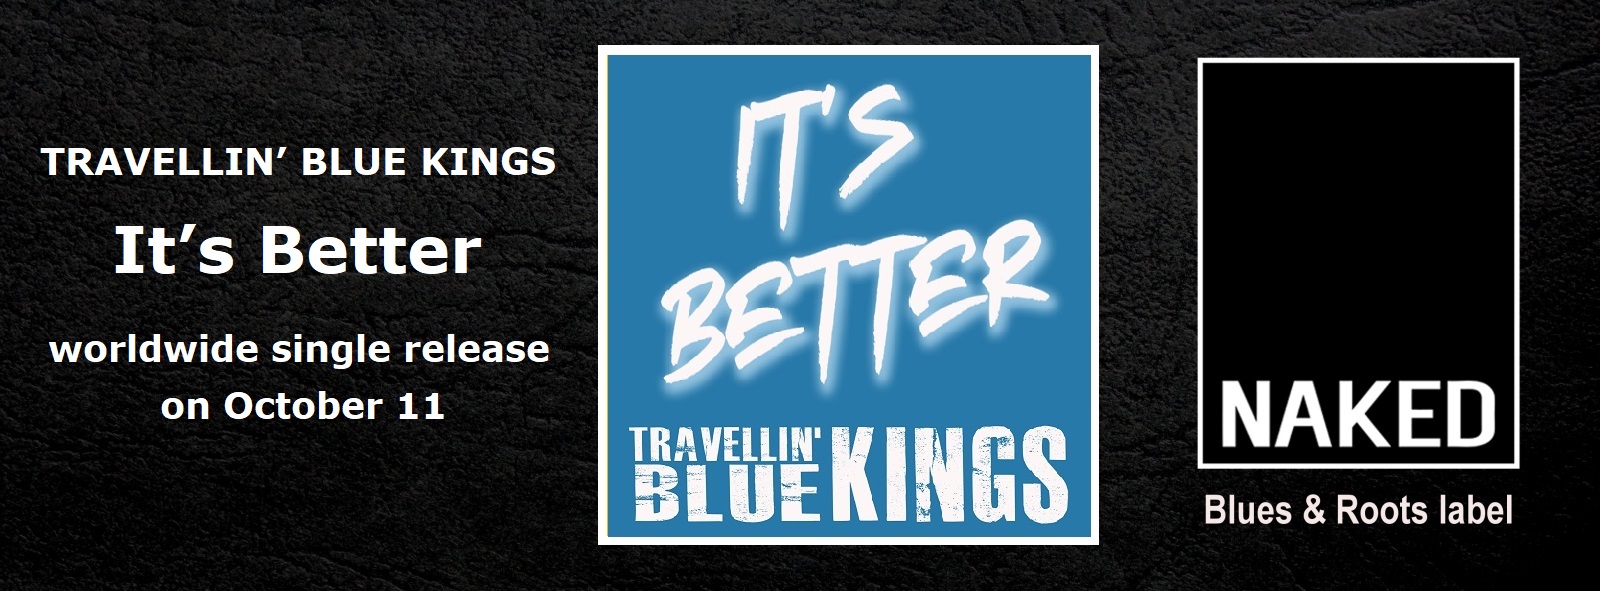 Travellin’ Blue Kings – It’s Better